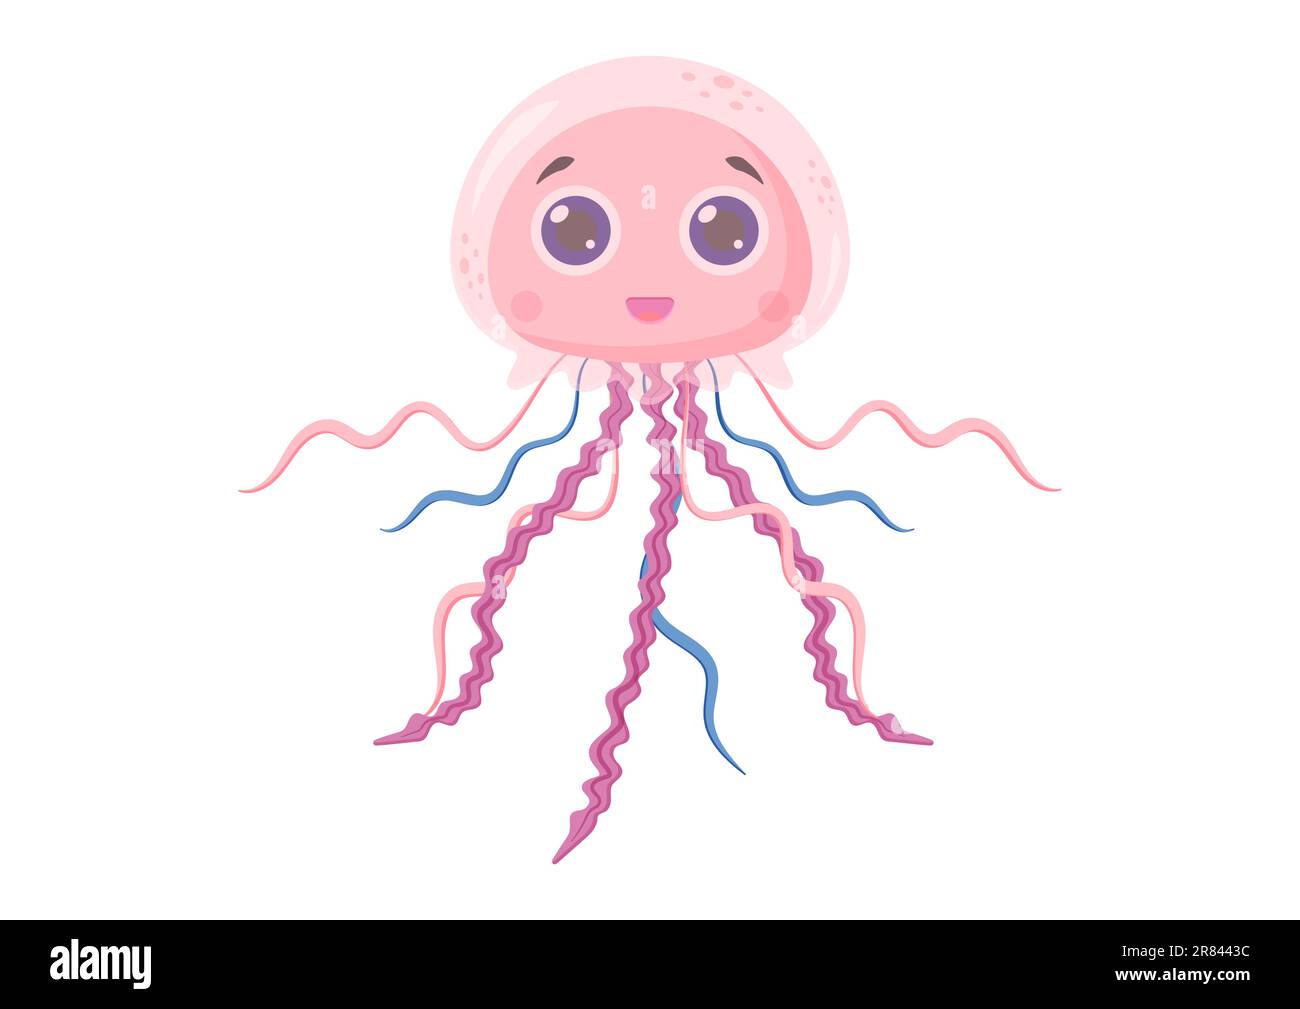 Illustration vectorielle de personnage de dessin animé de méduse isolée sur fond blanc Illustration de Vecteur